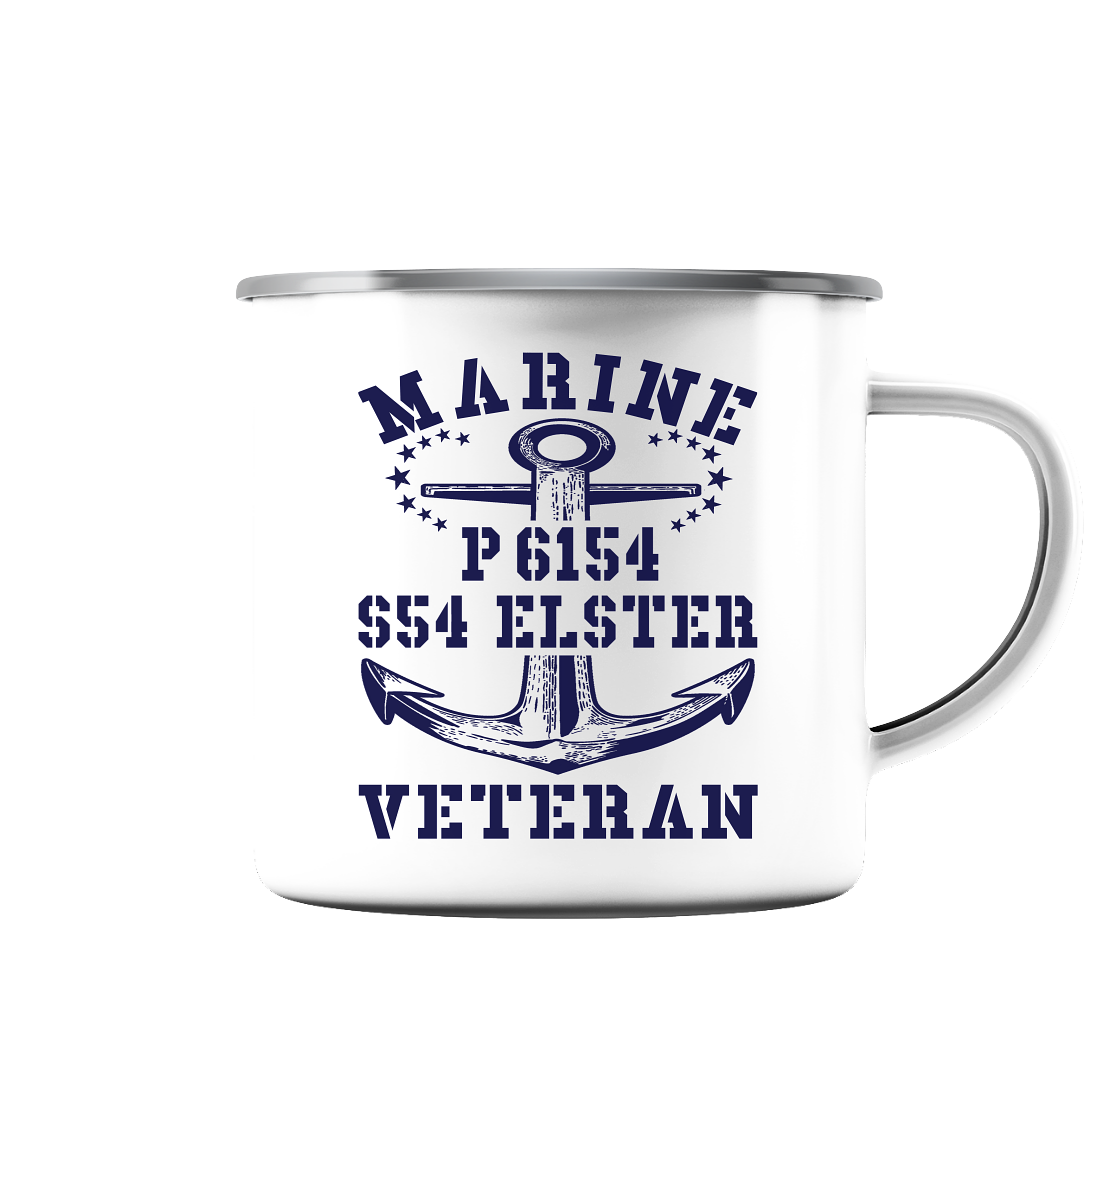 P6154 S54 ELSTER Marine Veteran - Emaille Tasse (Silber)